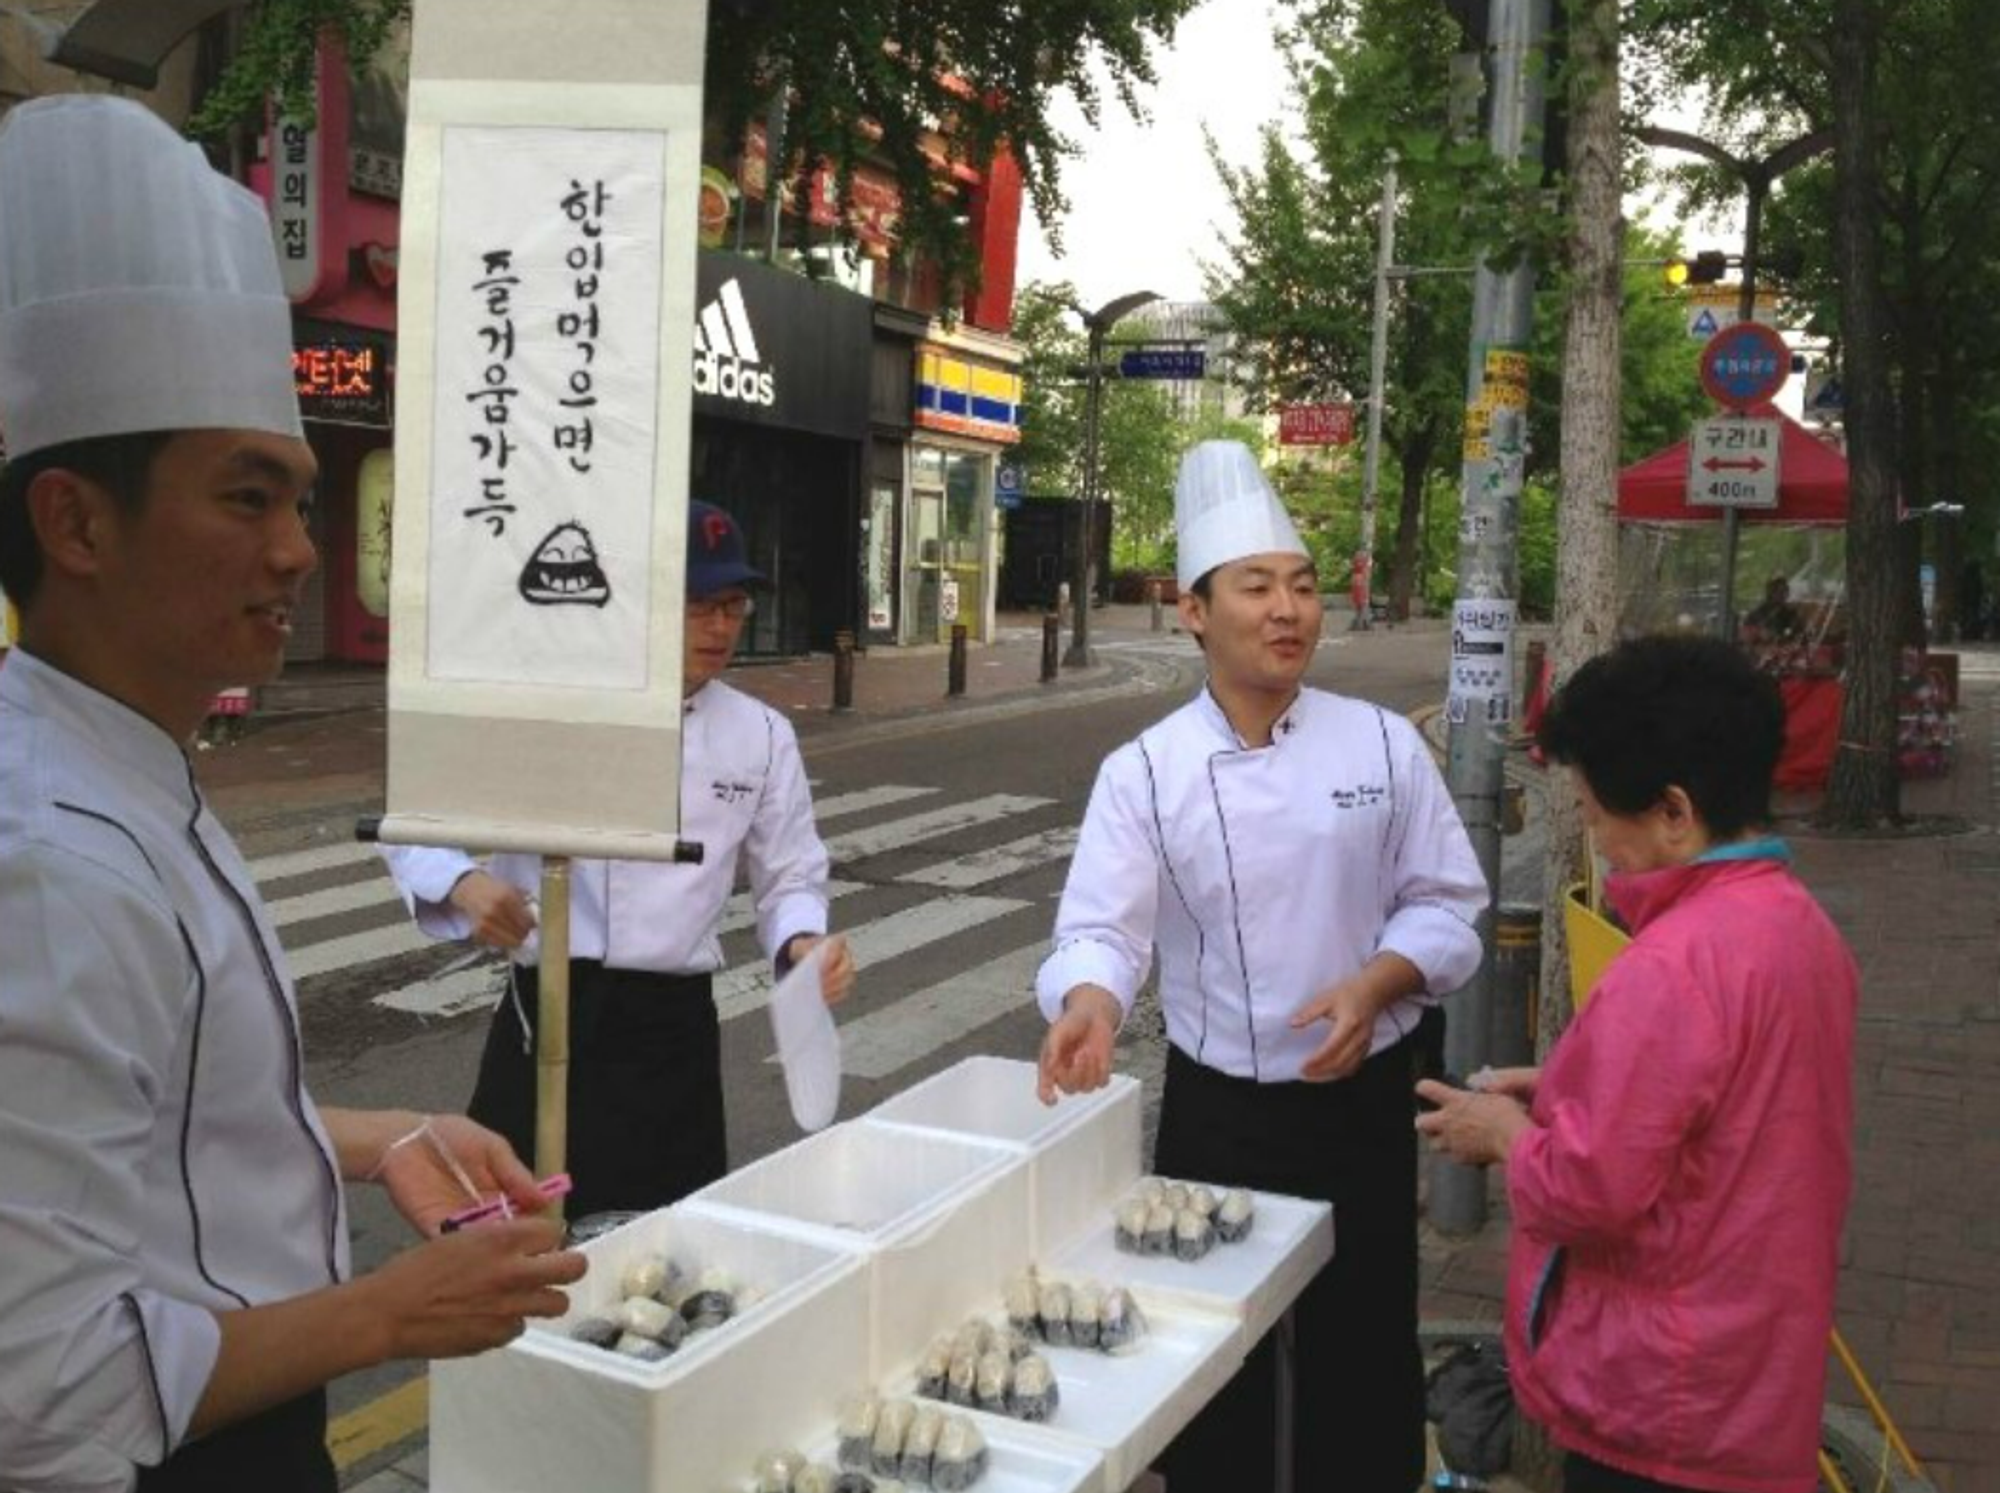 웃어밥의 초창기 모습. 사진 출처: 웃어밥 블로그.